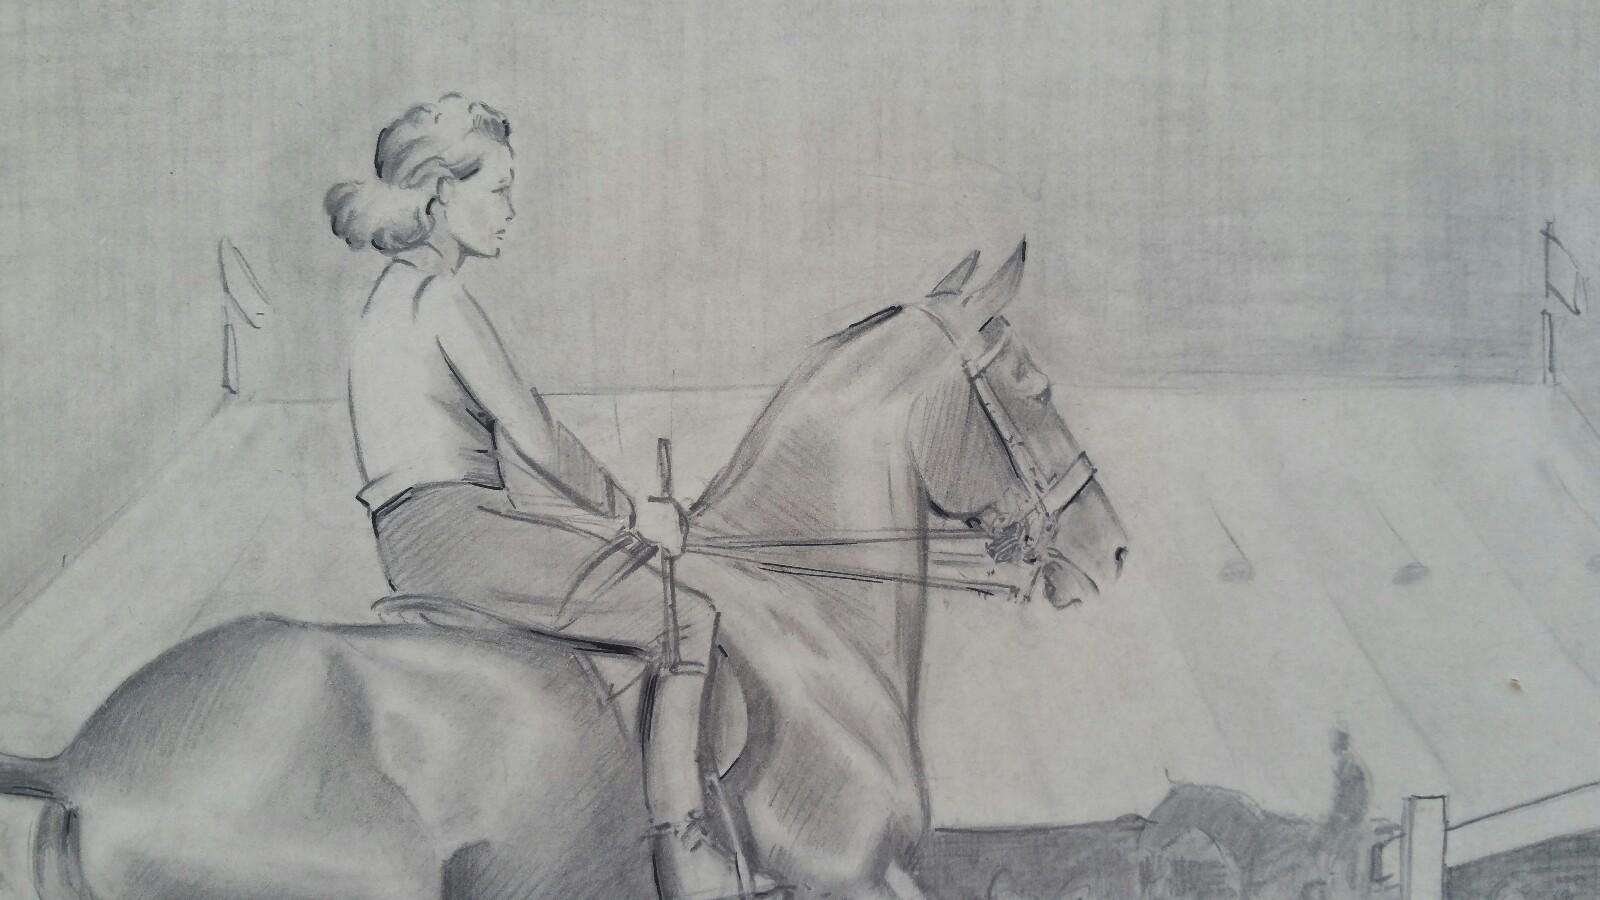 Englische Pferdesport-Dame des 20. Jahrhunderts auf Pferd, 1930er Jahre (Impressionismus), Art, von Eric Meade-King